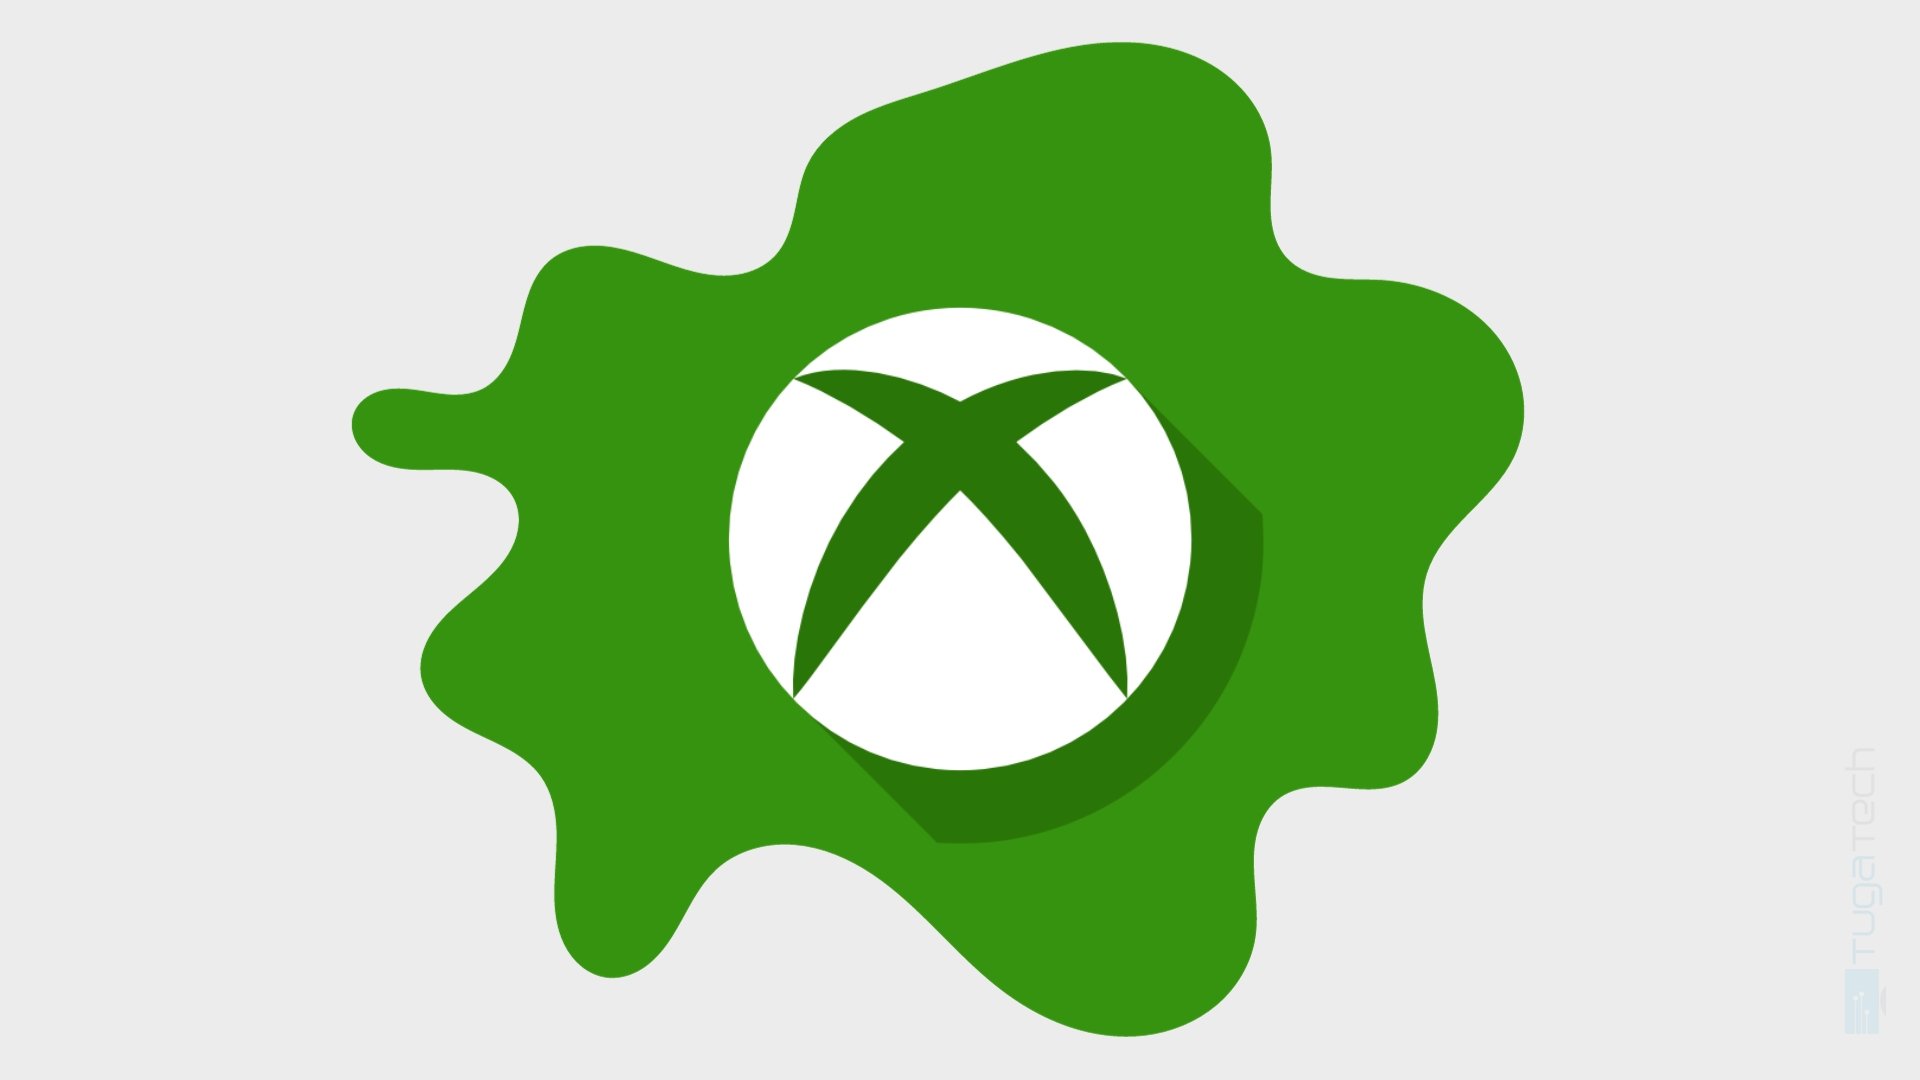 Microsoft continua focada em nova loja de aplicações mobile para jogos da Xbox